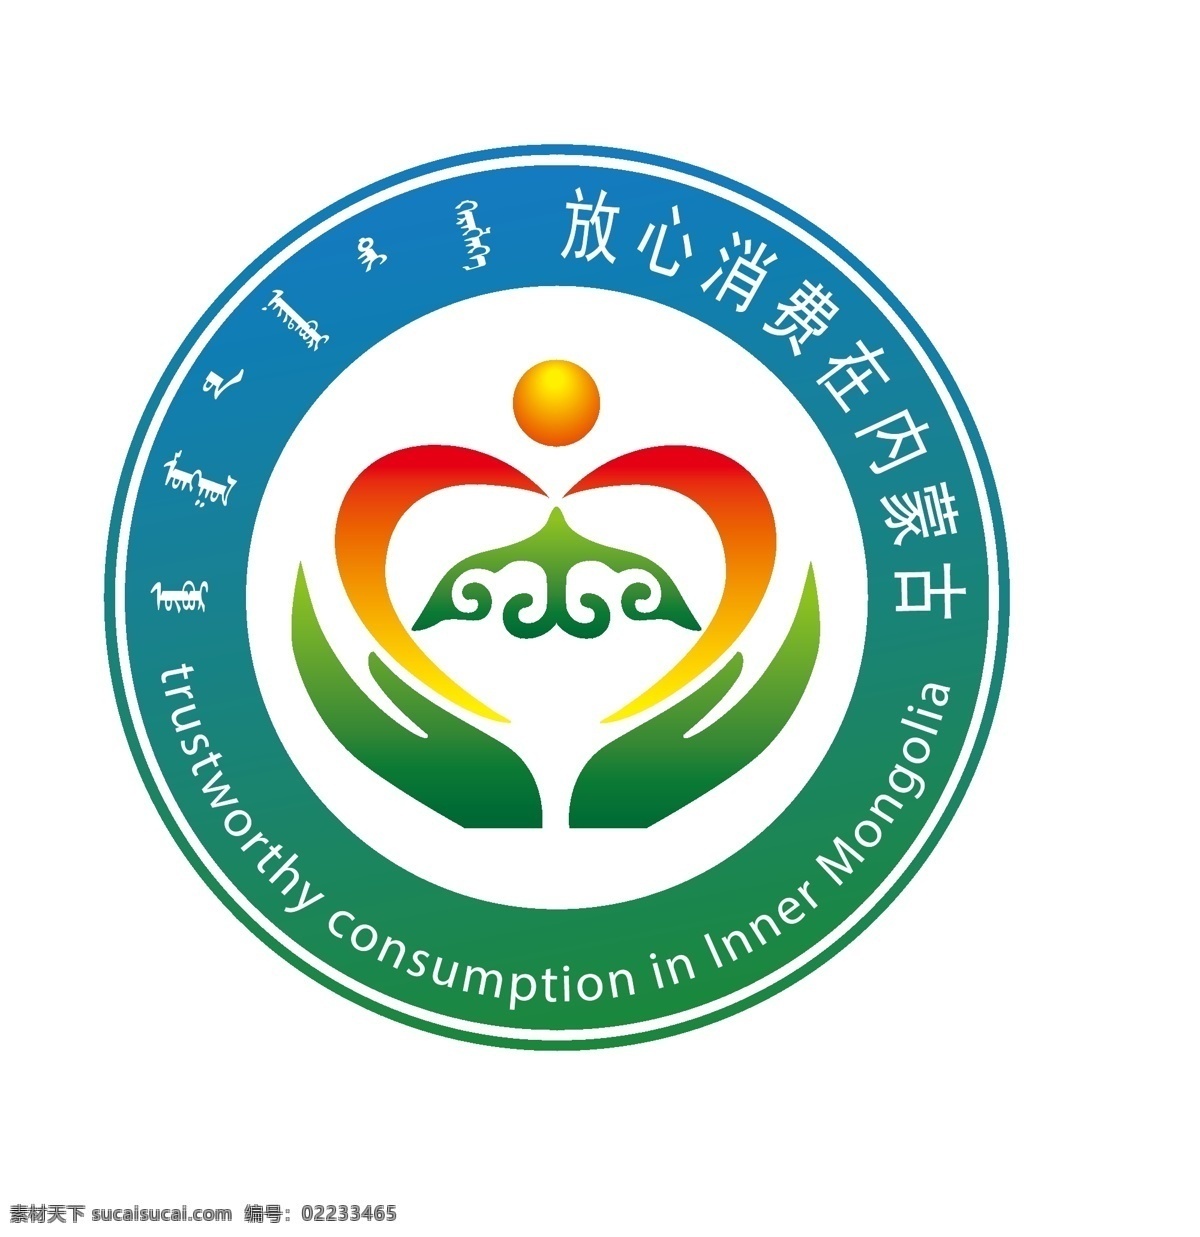 放心 消费 在内 蒙古 标志 放心消费标志 内蒙古 消费logo 放心消费 放心logo 标志图标 公共标识标志